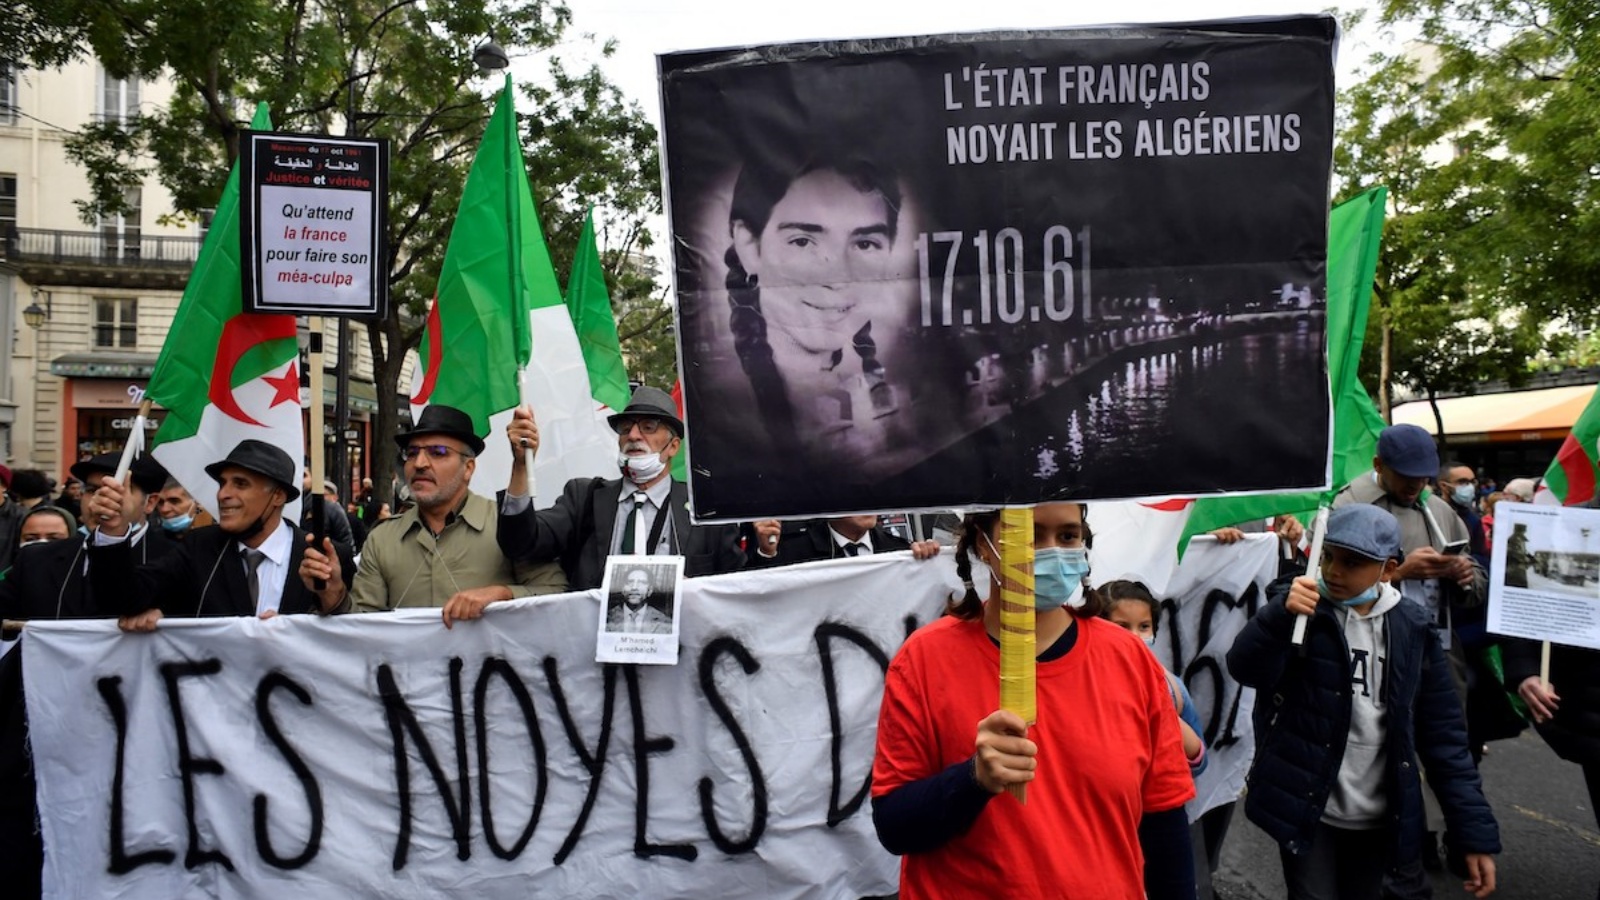 أشخاص يحملون لافتات وأعلام جزائرية خلال مسيرة لإحياء ذكرى القمع الوحشي لمظاهرة 17 تشرين الأول/أكتوبر 1961 والتي قُتل خلالها ما لا يقل عن 120 جزائريًا خلال احتجاج لدعم استقلال الجزائر، بالقرب من جسر بونت نوف في 17 تشرين الأول/أكتوبر 2021 في باريس.